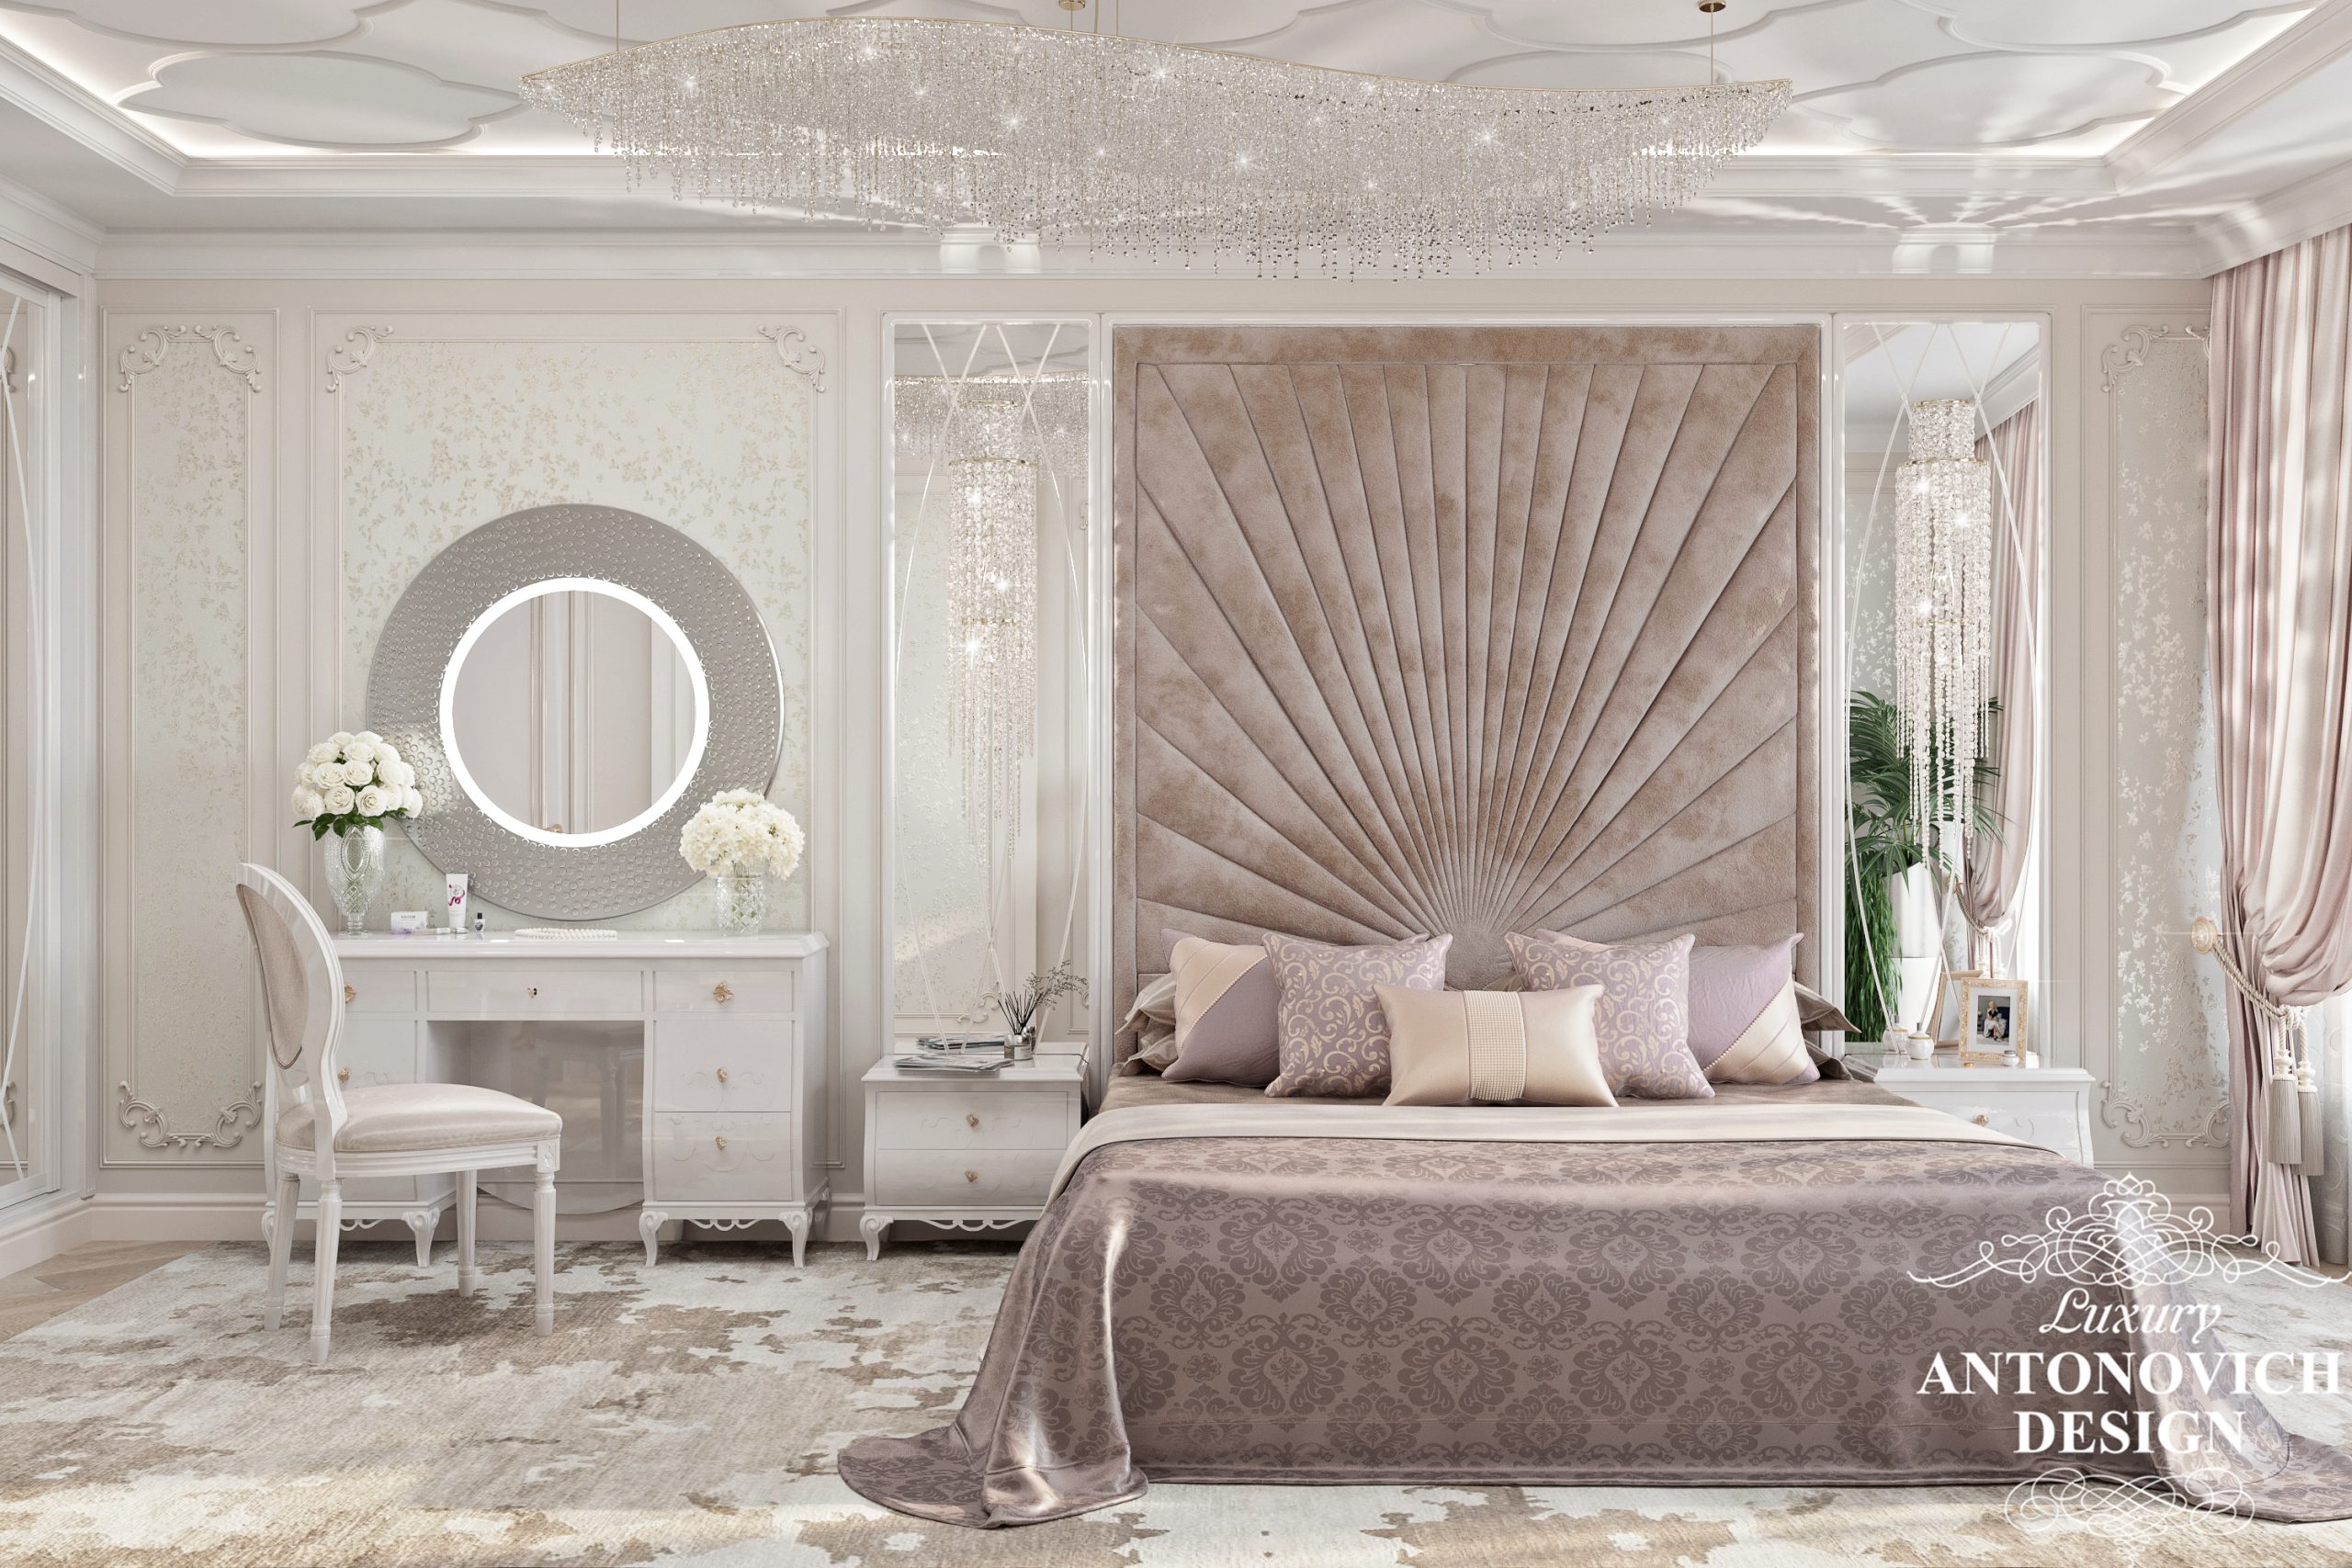 Роскошное мягкое панно и зона будуара с яркой подсветкой в дизайне женской спальни в изящном неоклассическом стиле